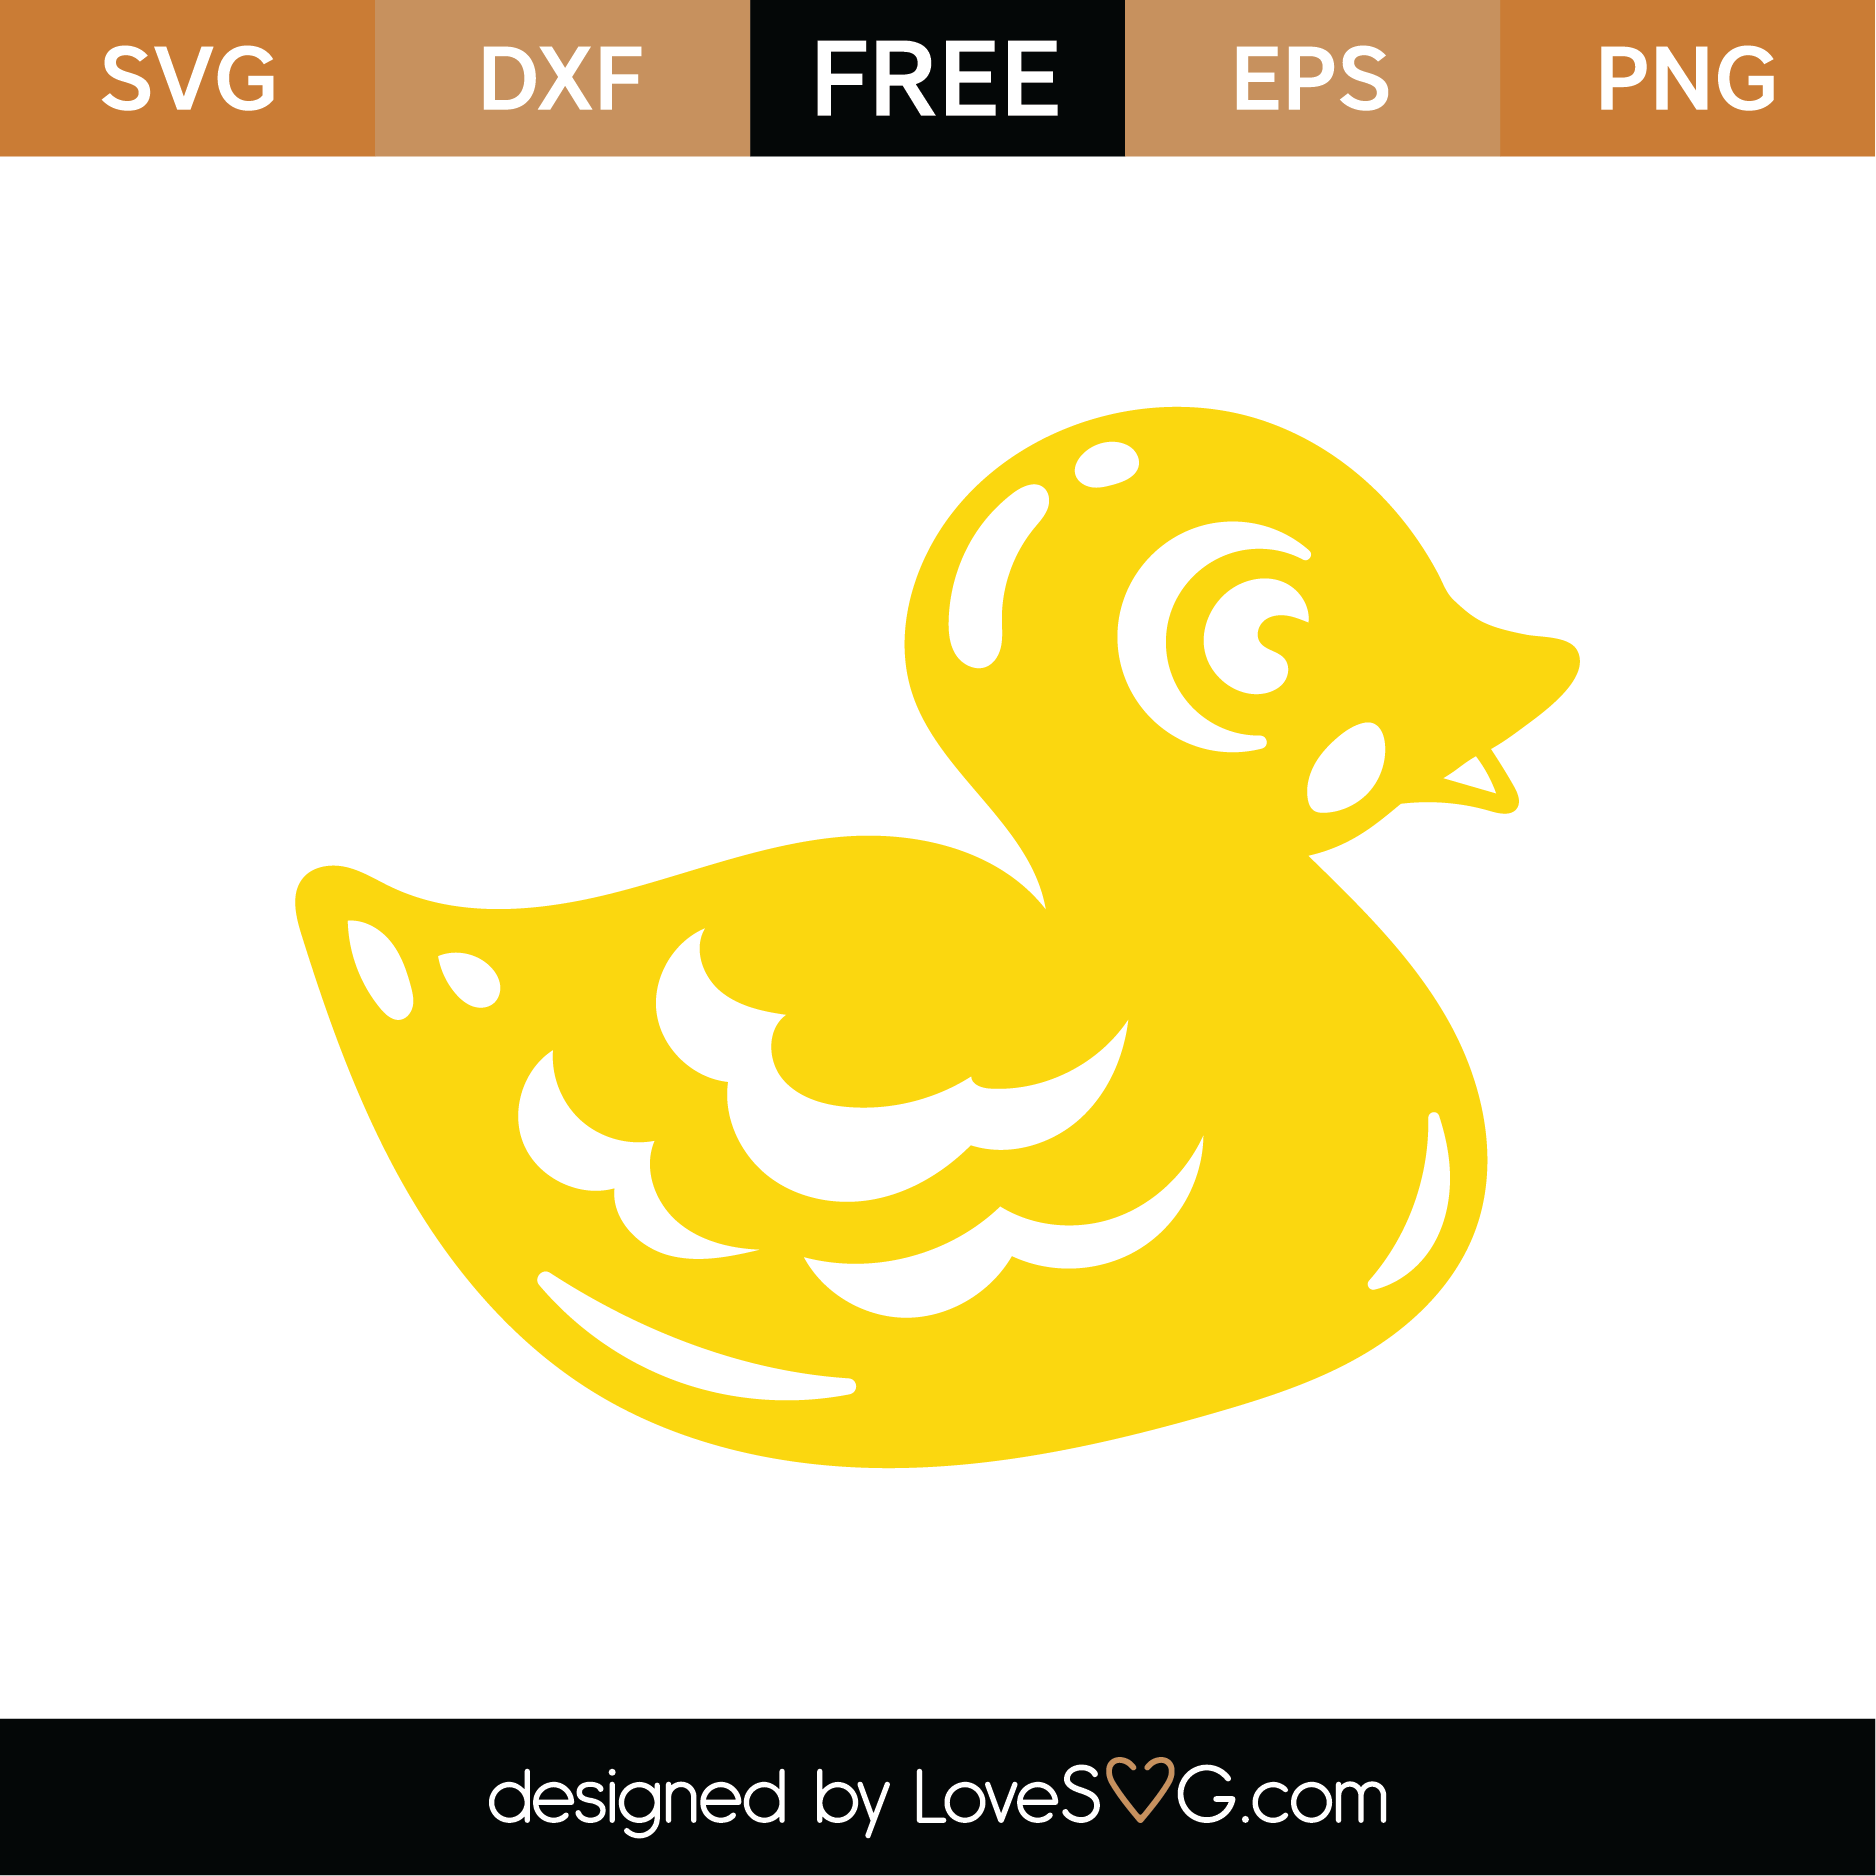 Download Free Rubber Duck SVG Cut File | Lovesvg.com